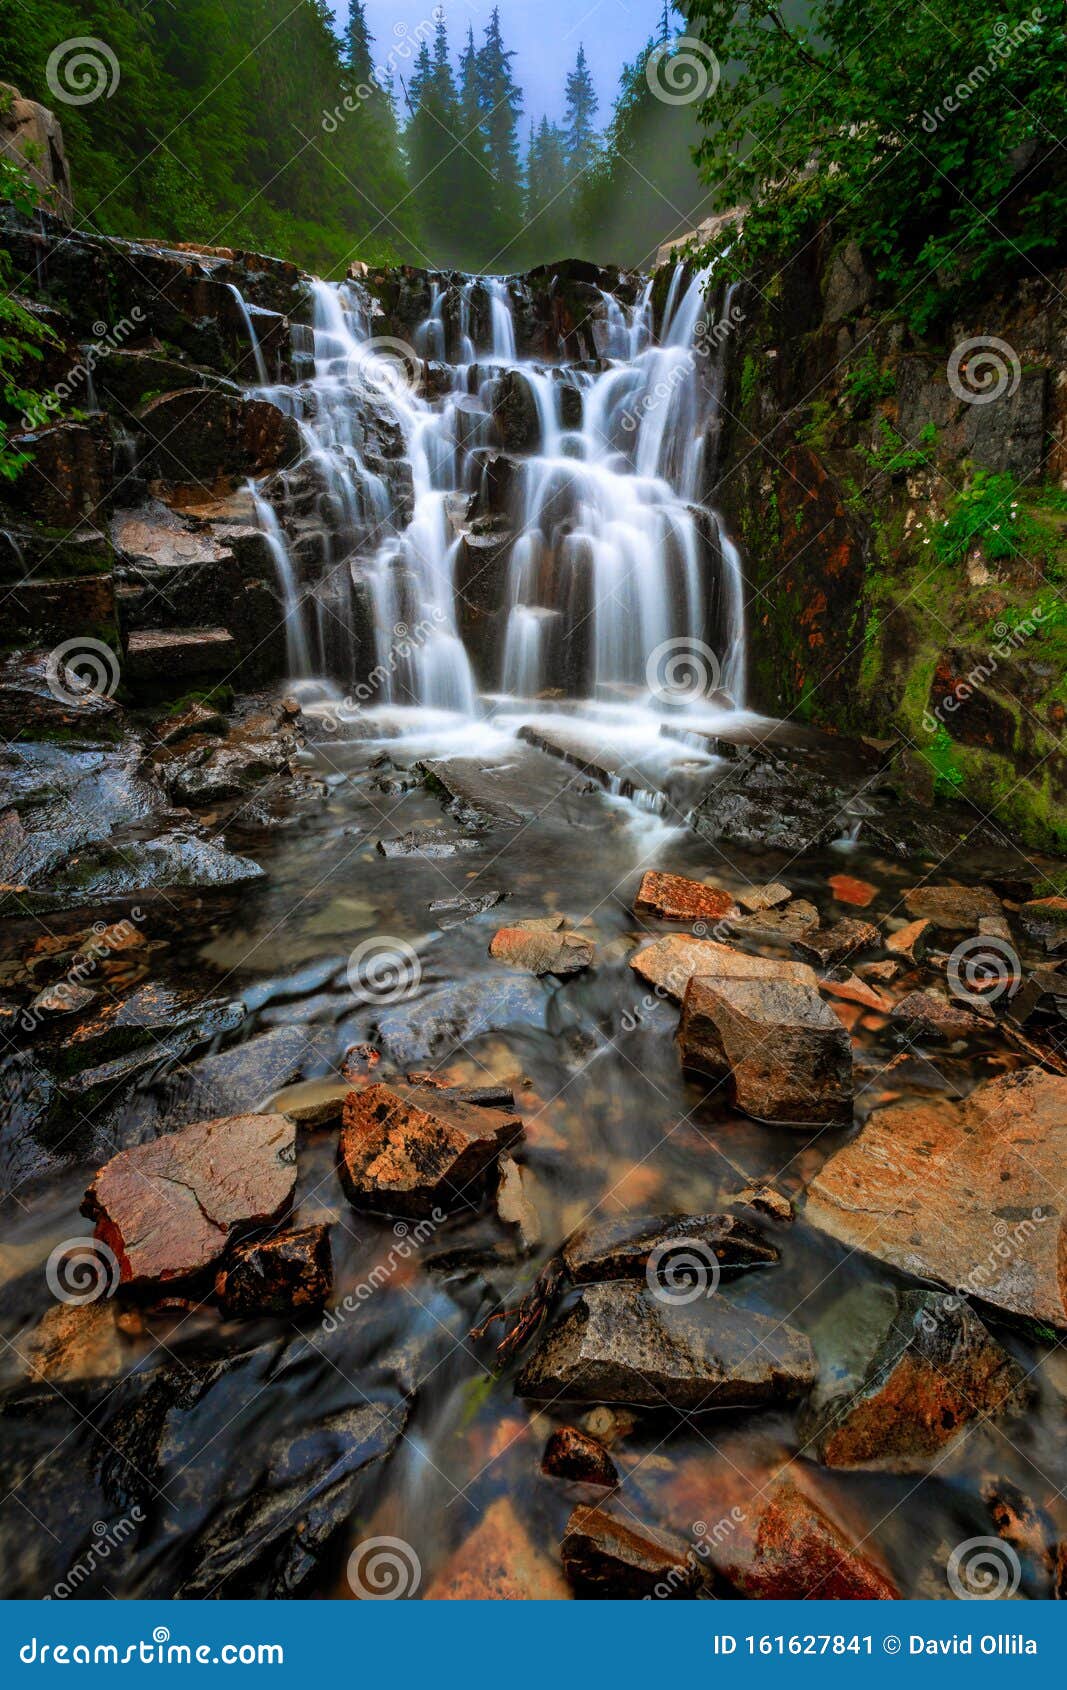 sunbeam creek waterfall, mt rainier national park, wa